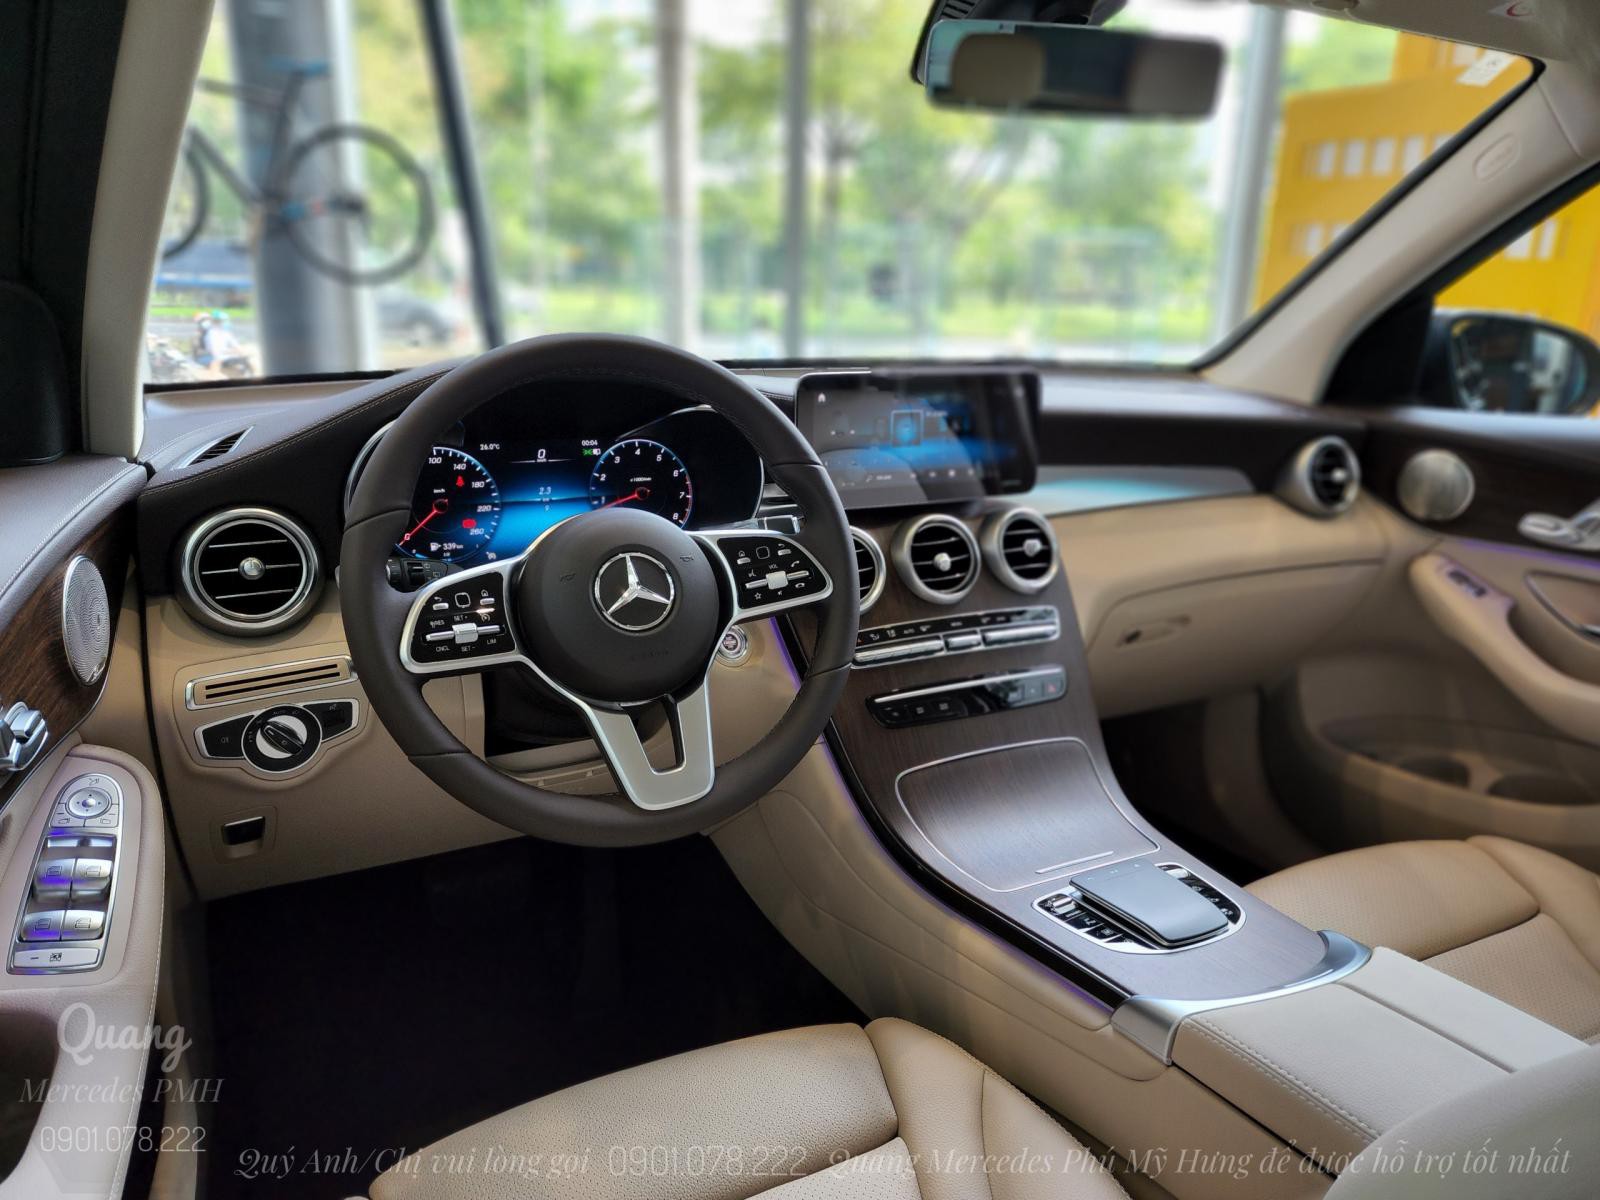 Mercedes GLC200 4Matic 2022 | Màu Xám Giao Ngay Quận 3 | Phone: 0901 078 222 Quang  Mercedes Phú Mỹ Hưng